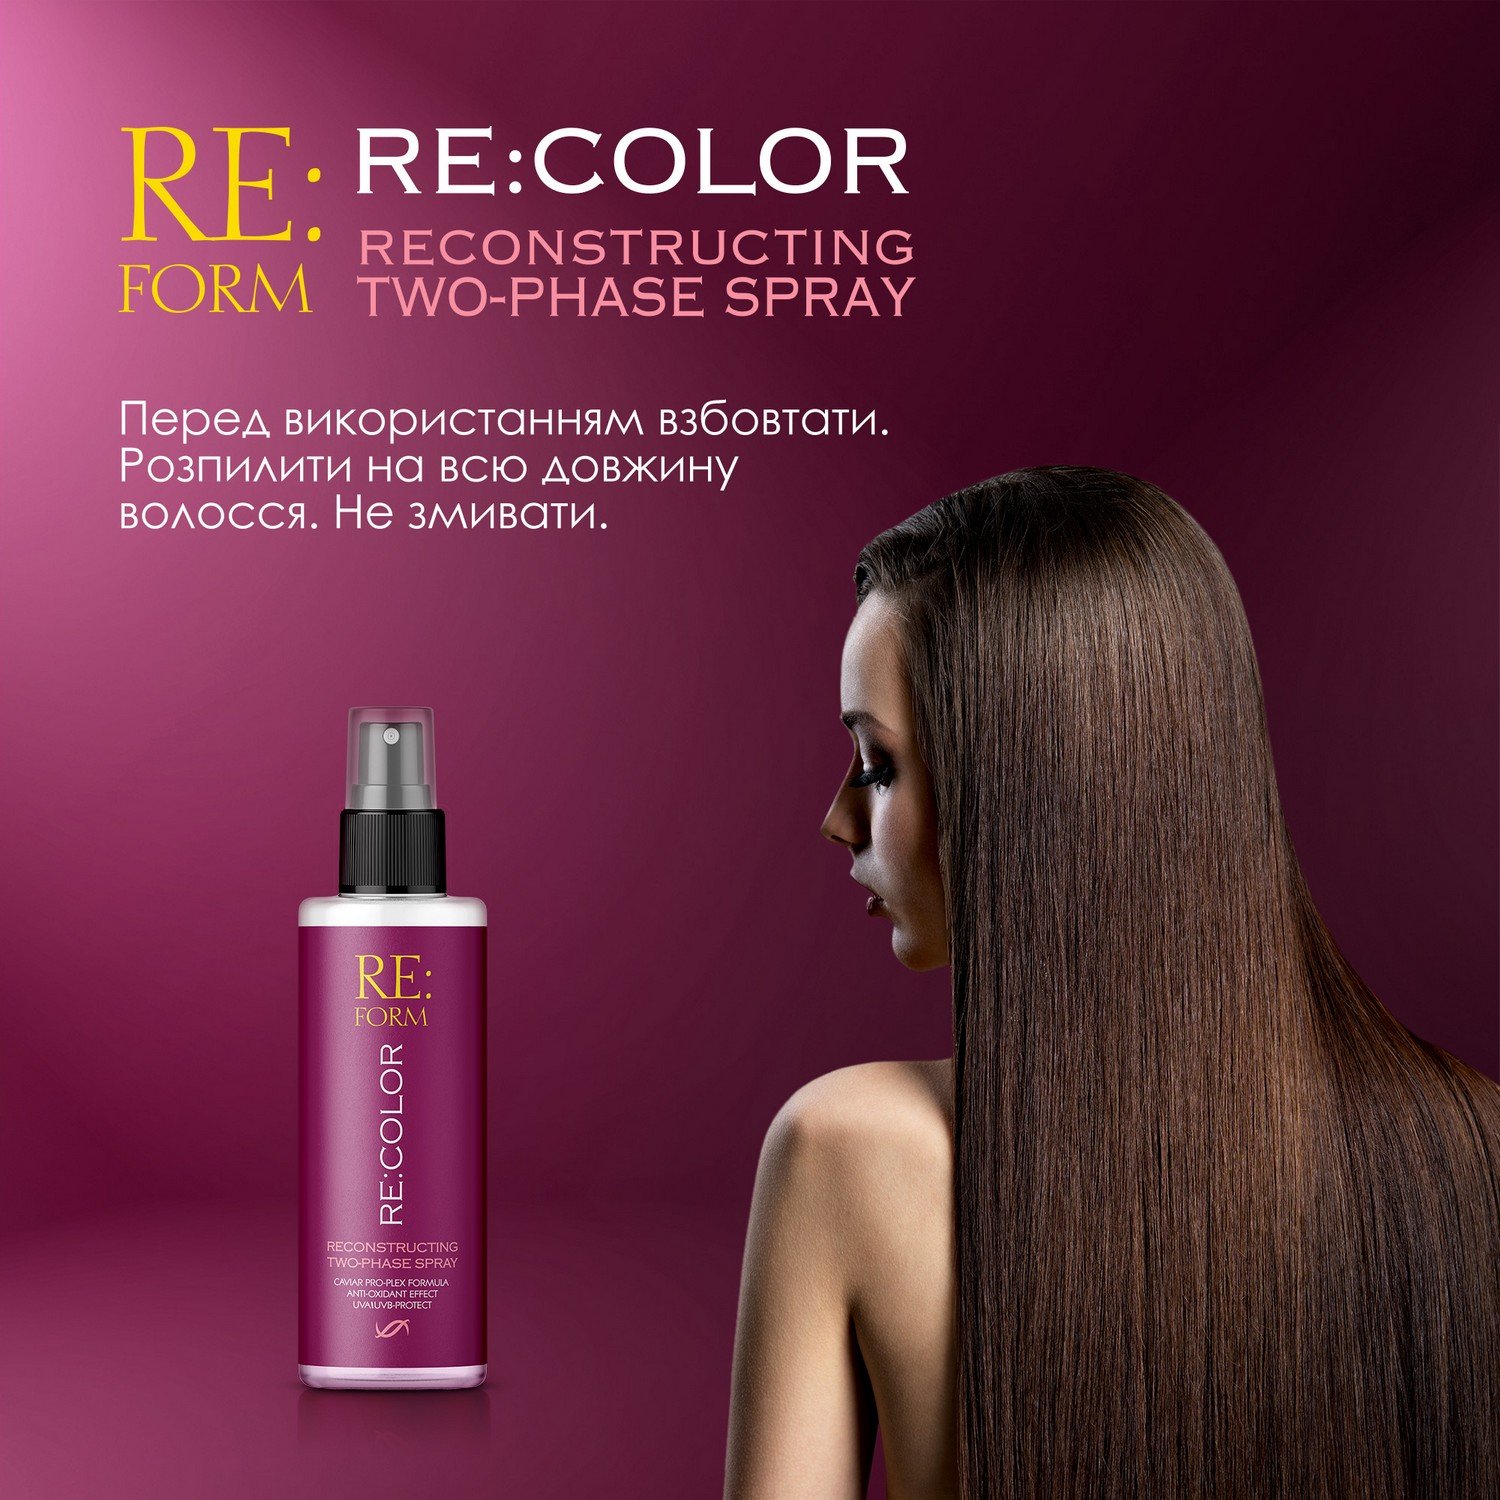 Реконструирующий двухфазный спрей Re:form Re:color Сохранение цвета и восстановление окрашенных волос, 200 мл - фото 8